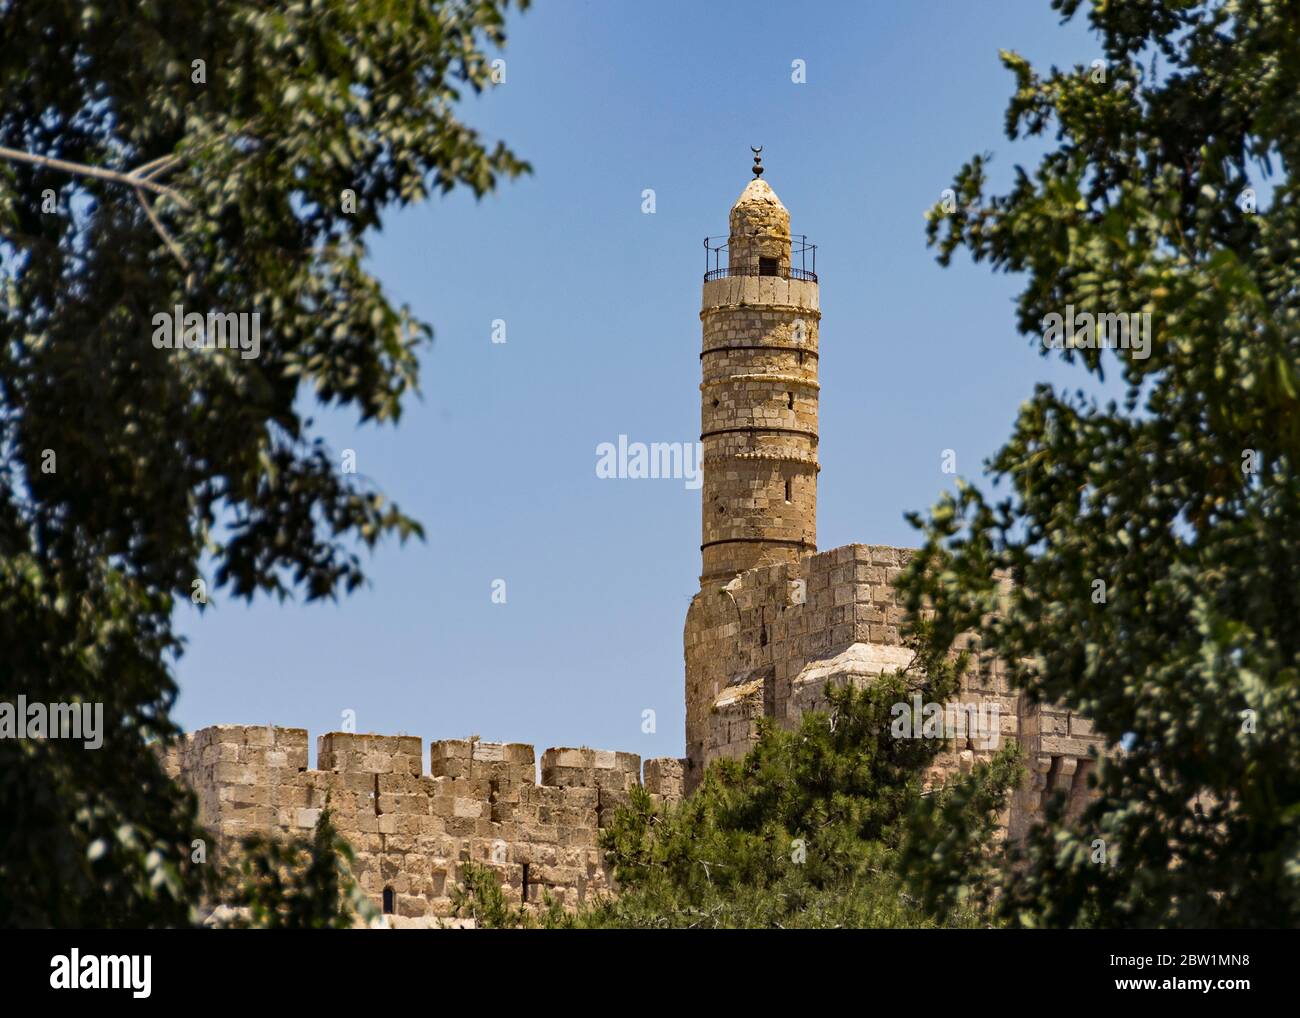 Turm von david migdal david Zitadelle Moschee und Museum in der Altstadt von jerusalem israel von verschwommenen Vordergrund Laub eingerahmt Stockfoto